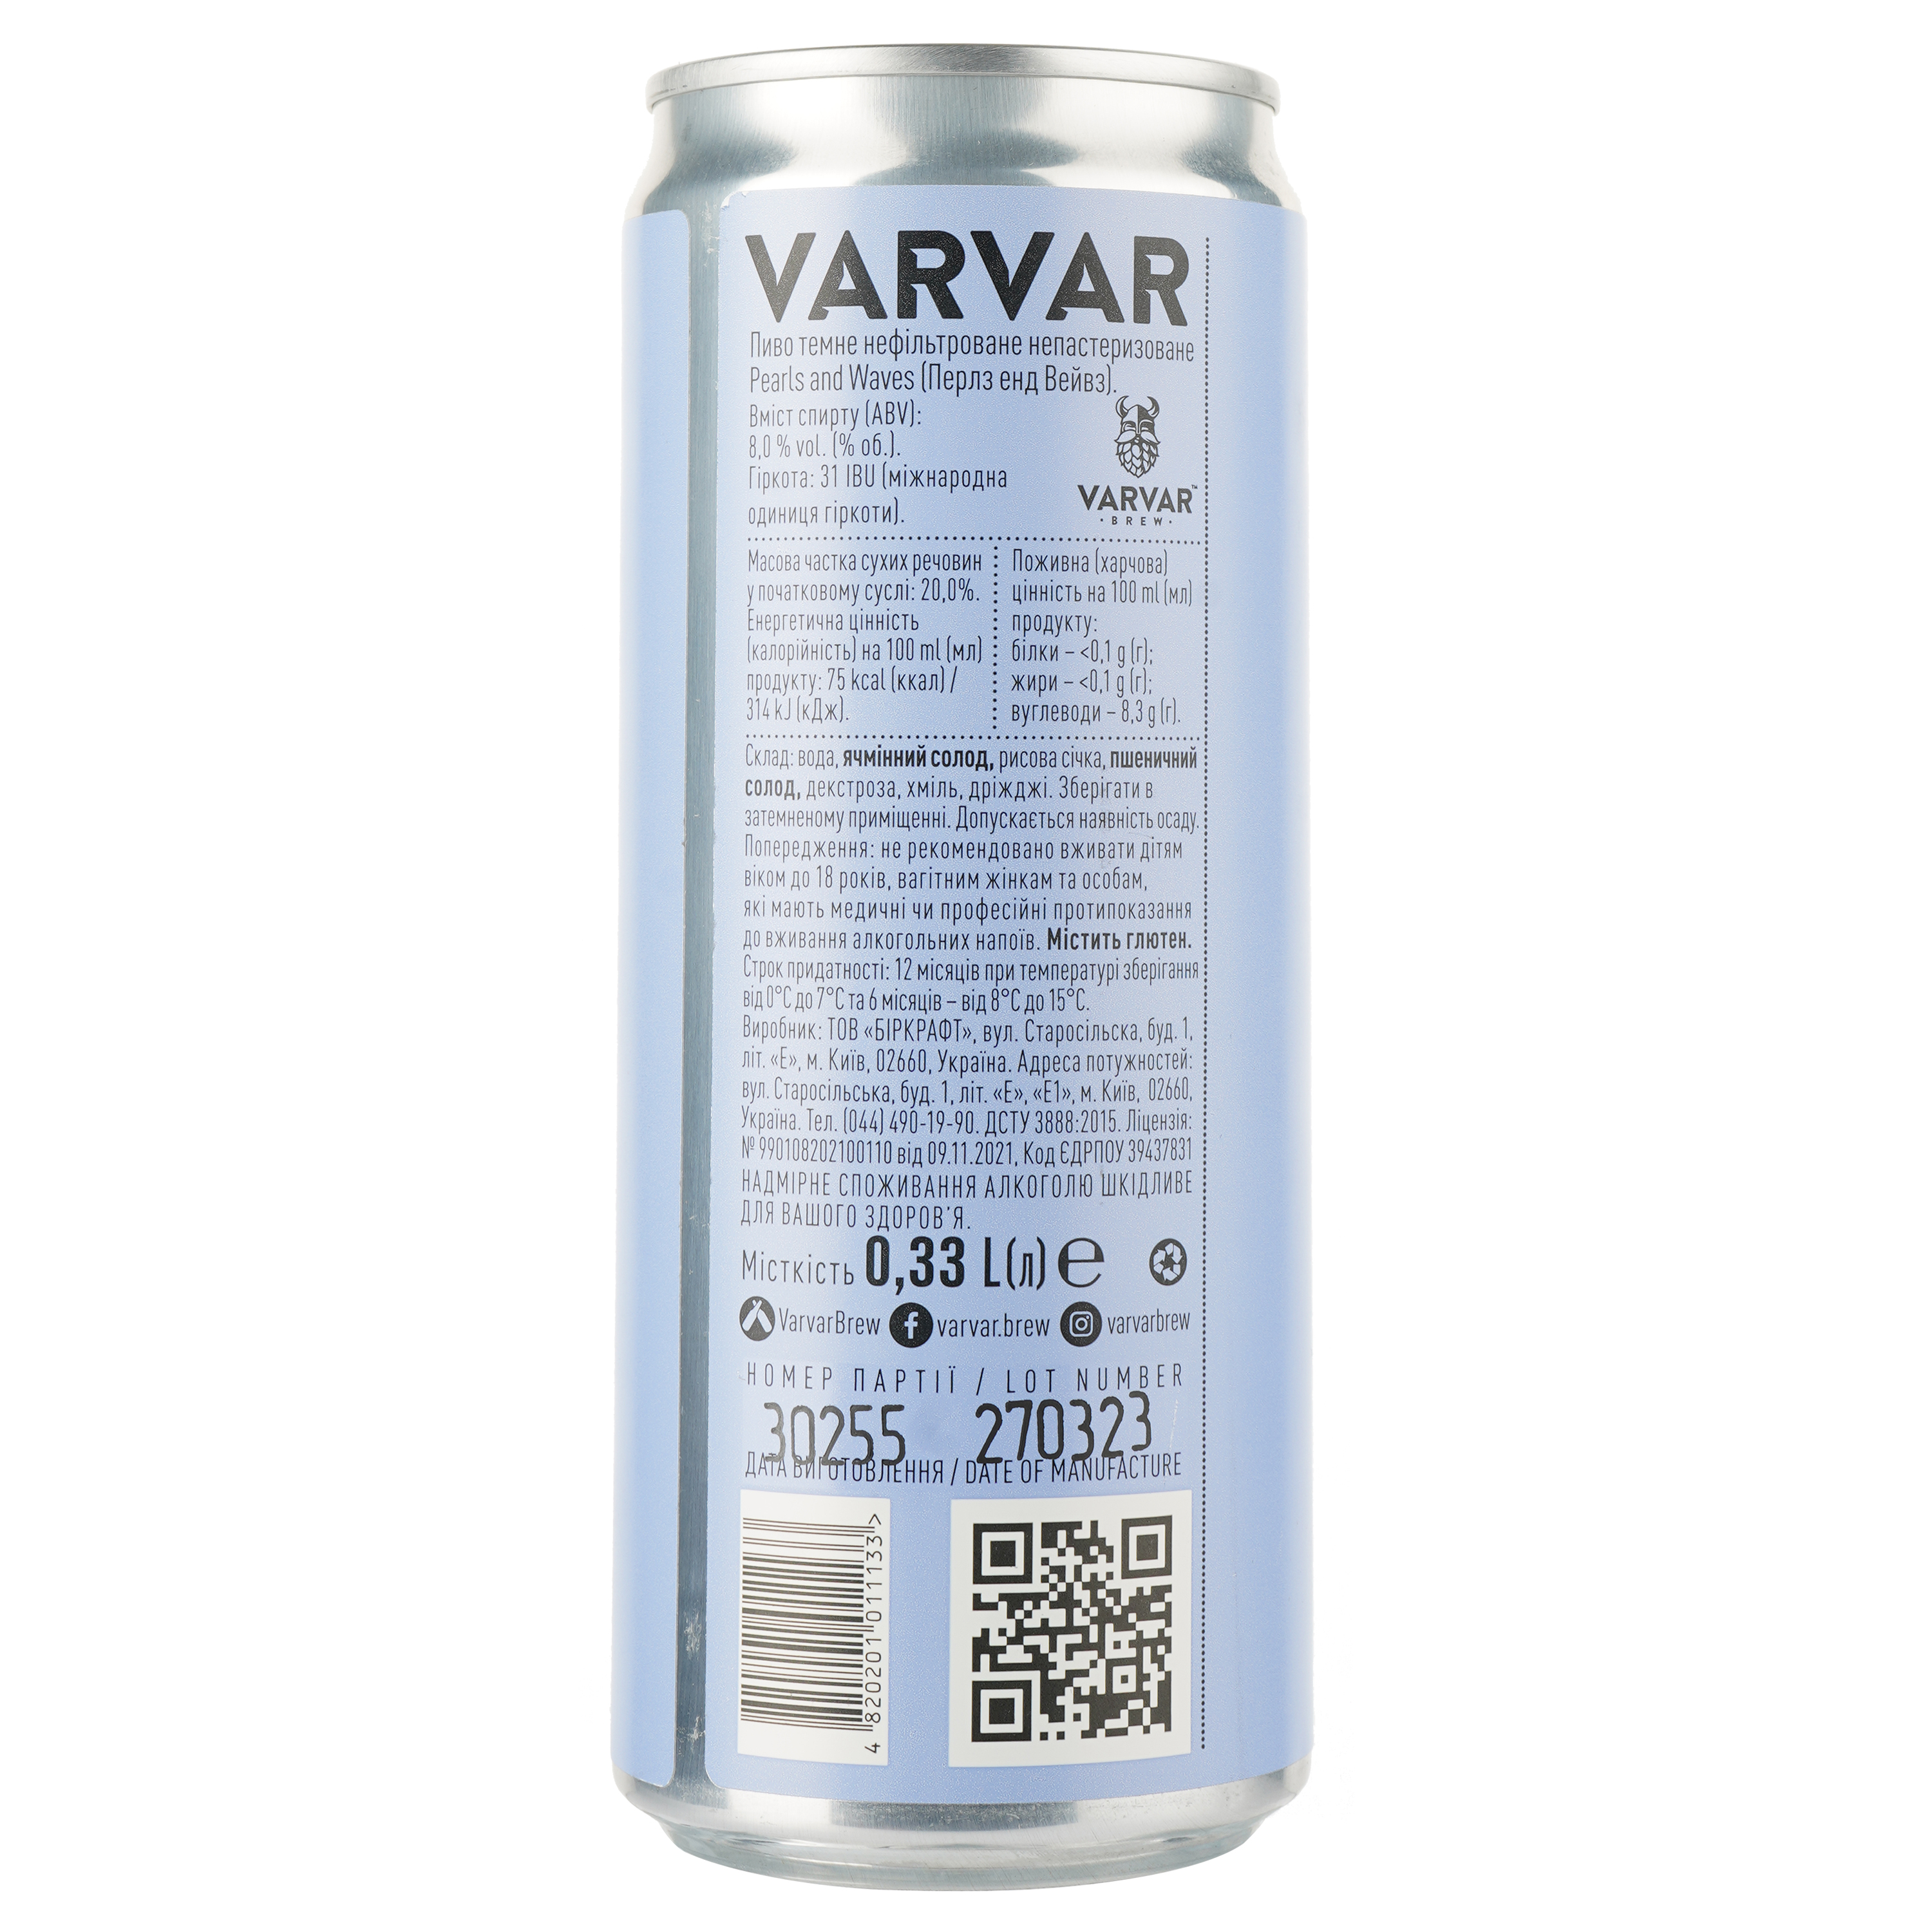 Пиво Varvar Pearls and Waves, темное, нефильтрованное, 8,6%, ж/б, 0,33 л - фото 2